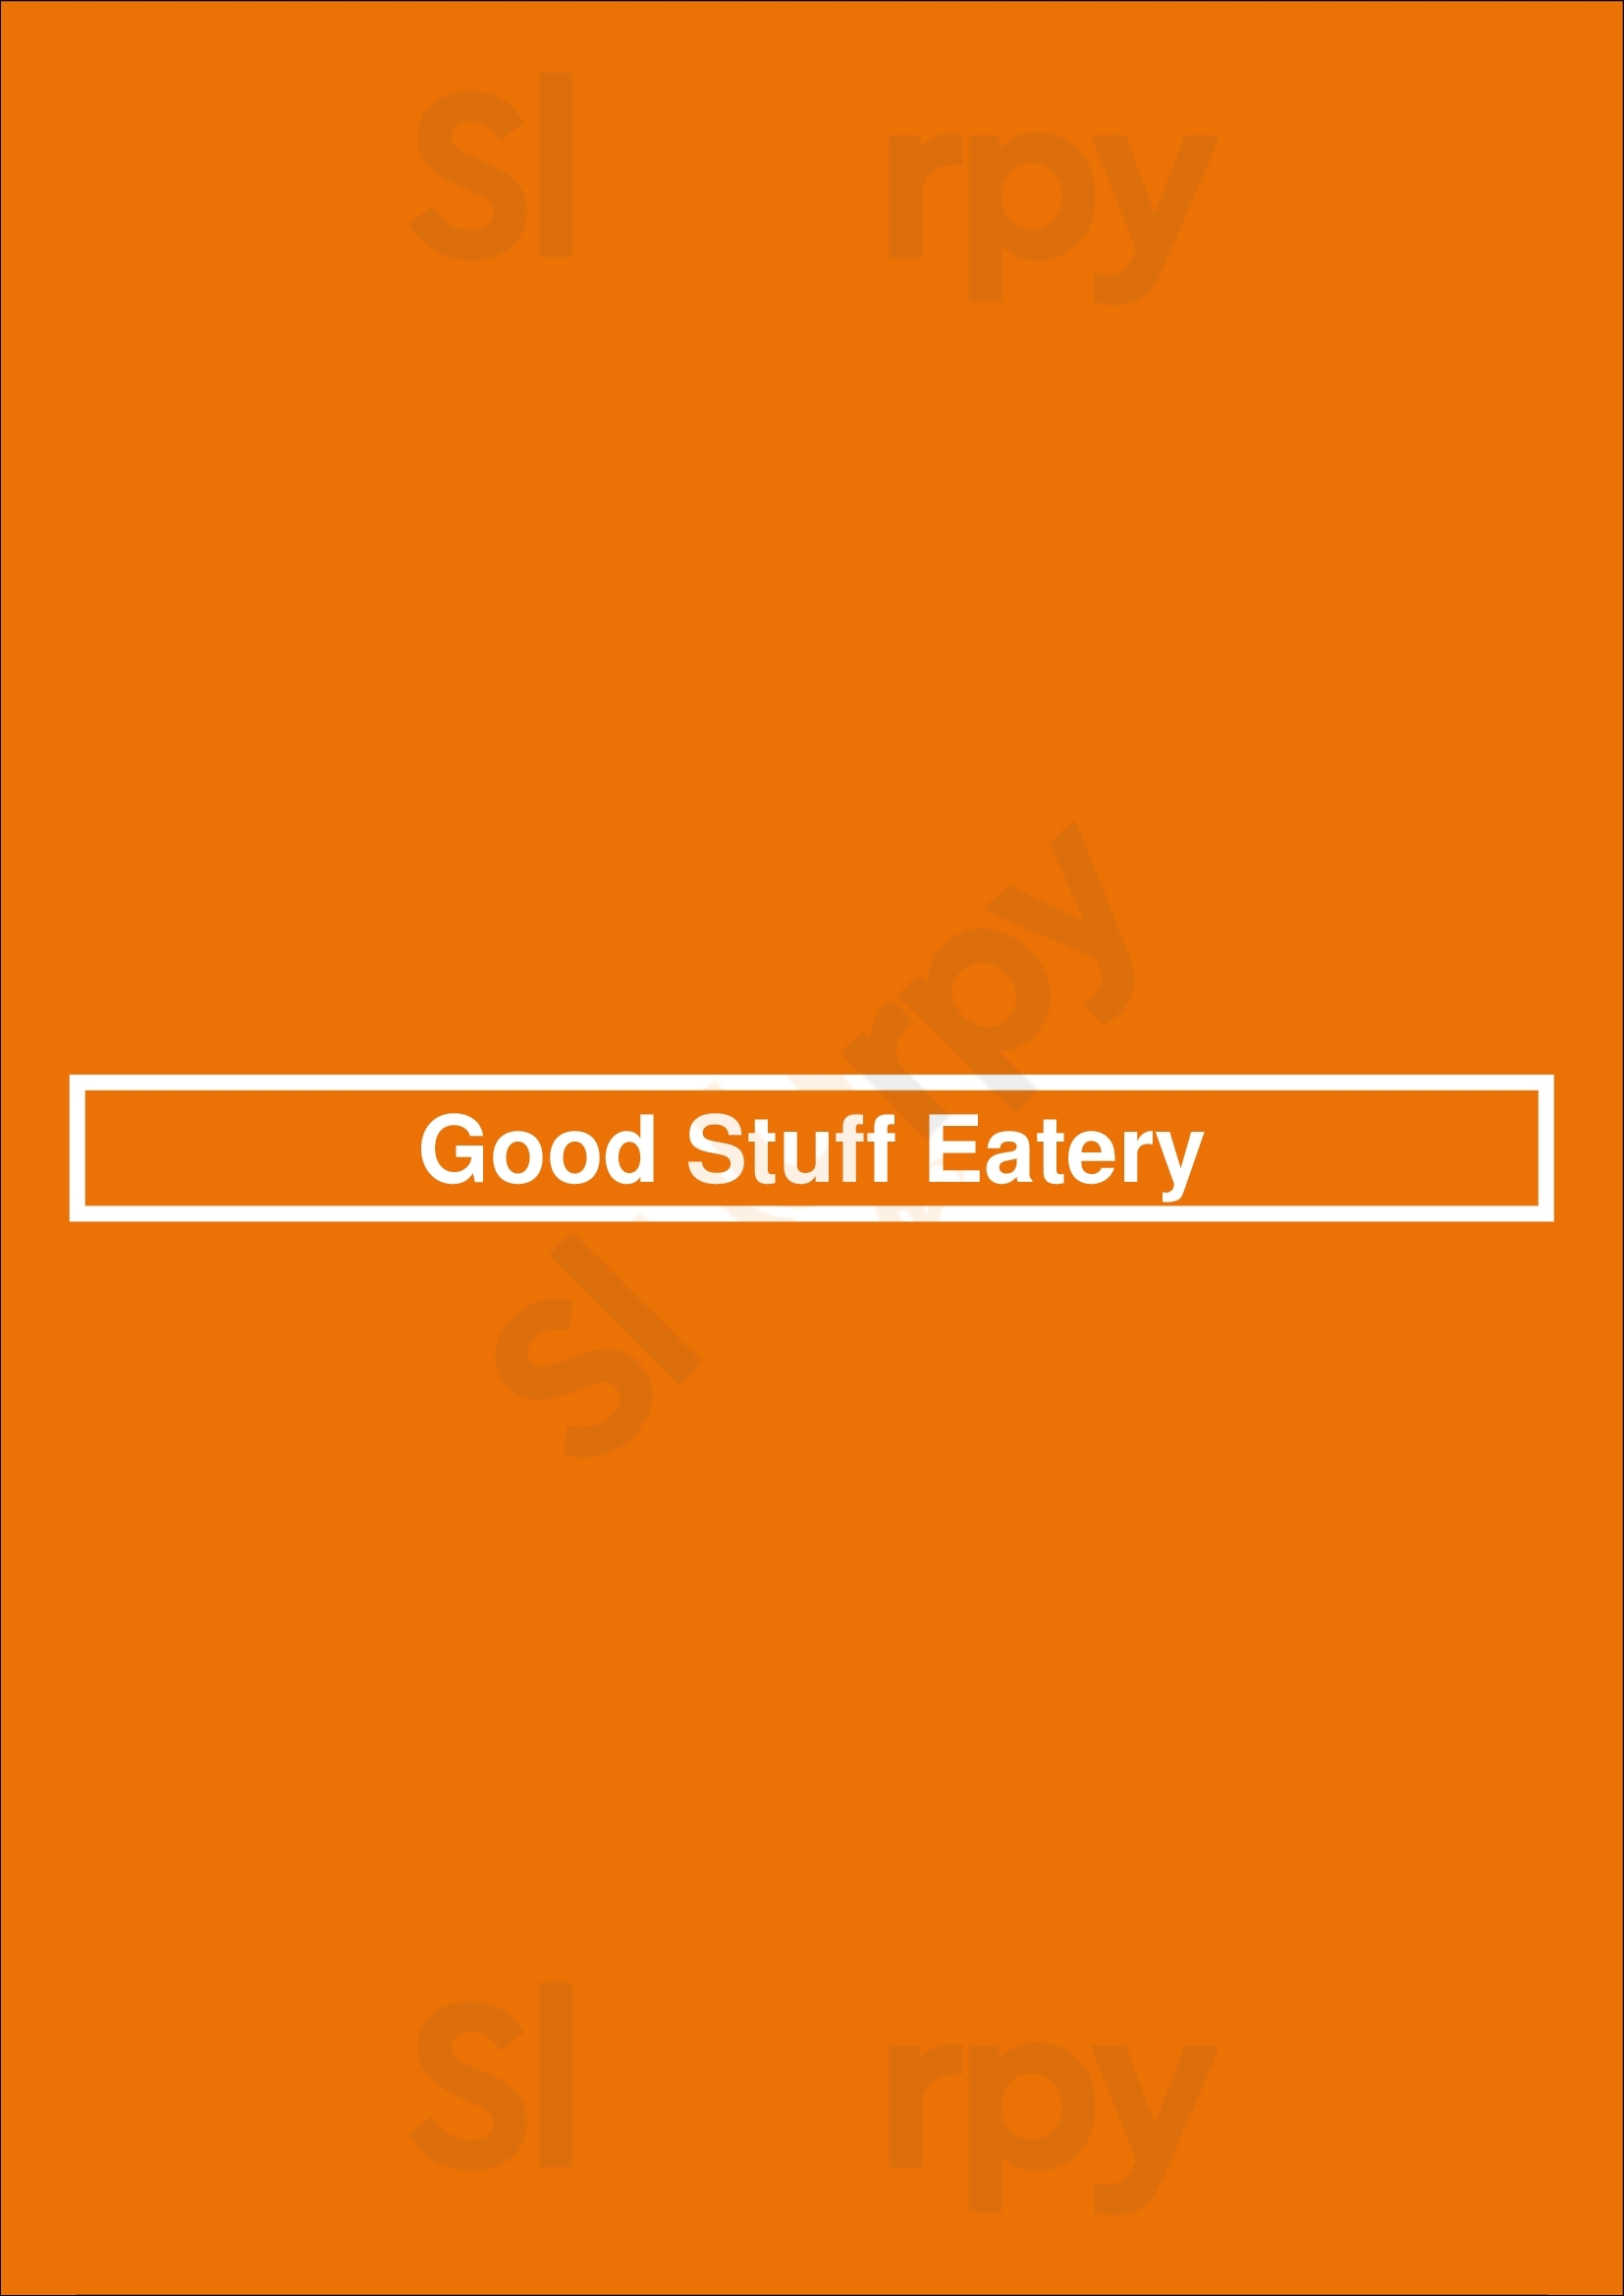 Good Stuff Eatery Arlington Menu - 1